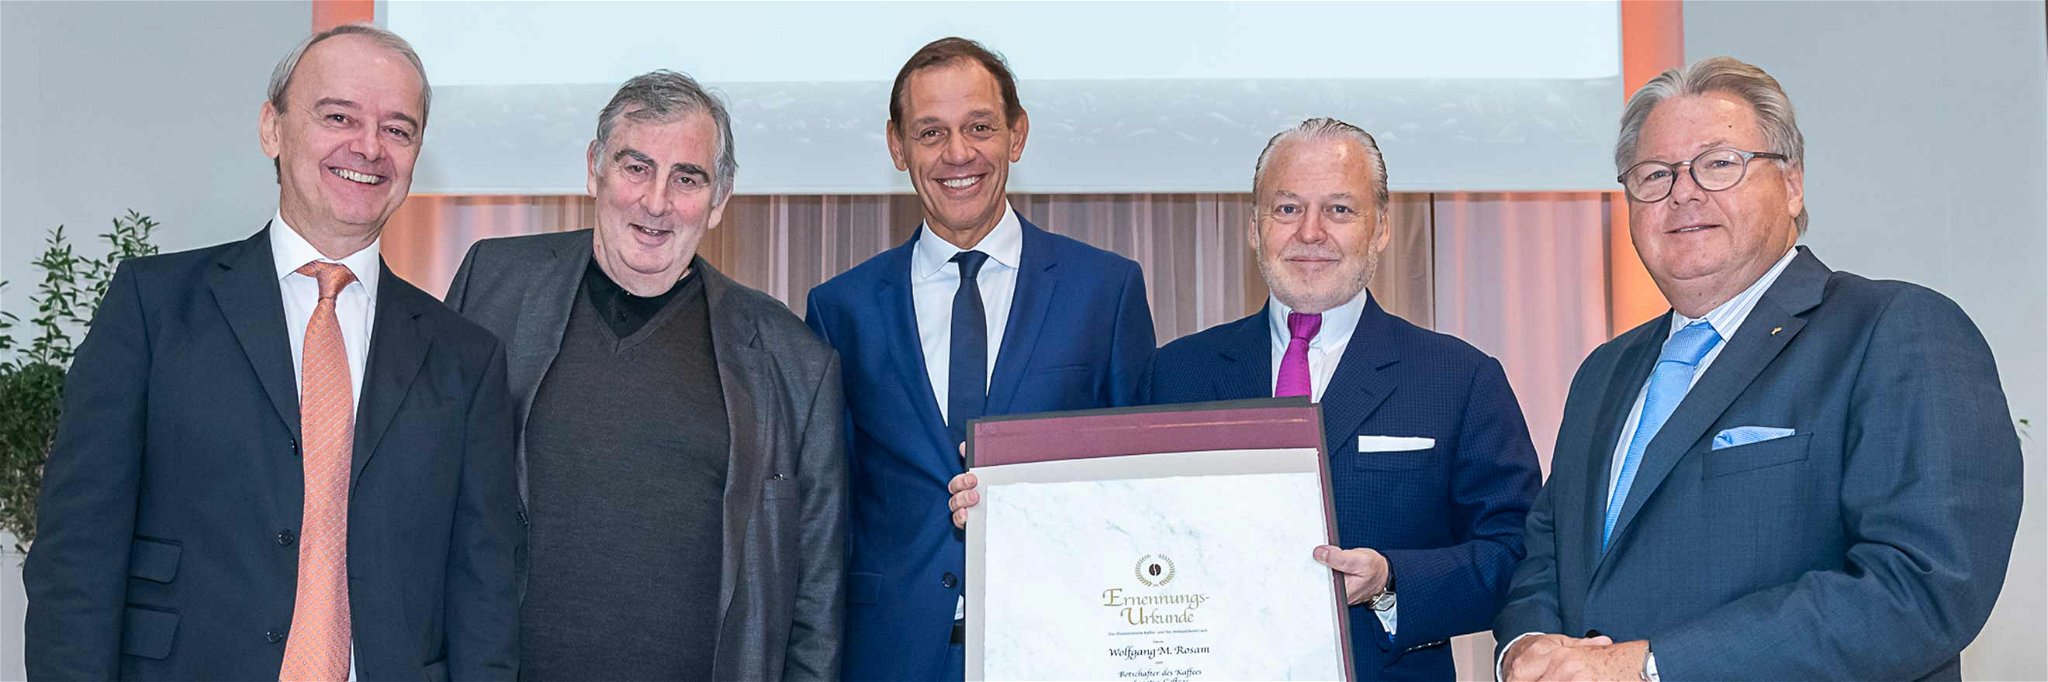 Die Führungsriege des Österreichischen Kaffeeverbands Johann Brunner, Andrew Demmer, Marcel Löffler und Harald Mayer überreichen Wolfgang Rosam die Ehrenurkunde.